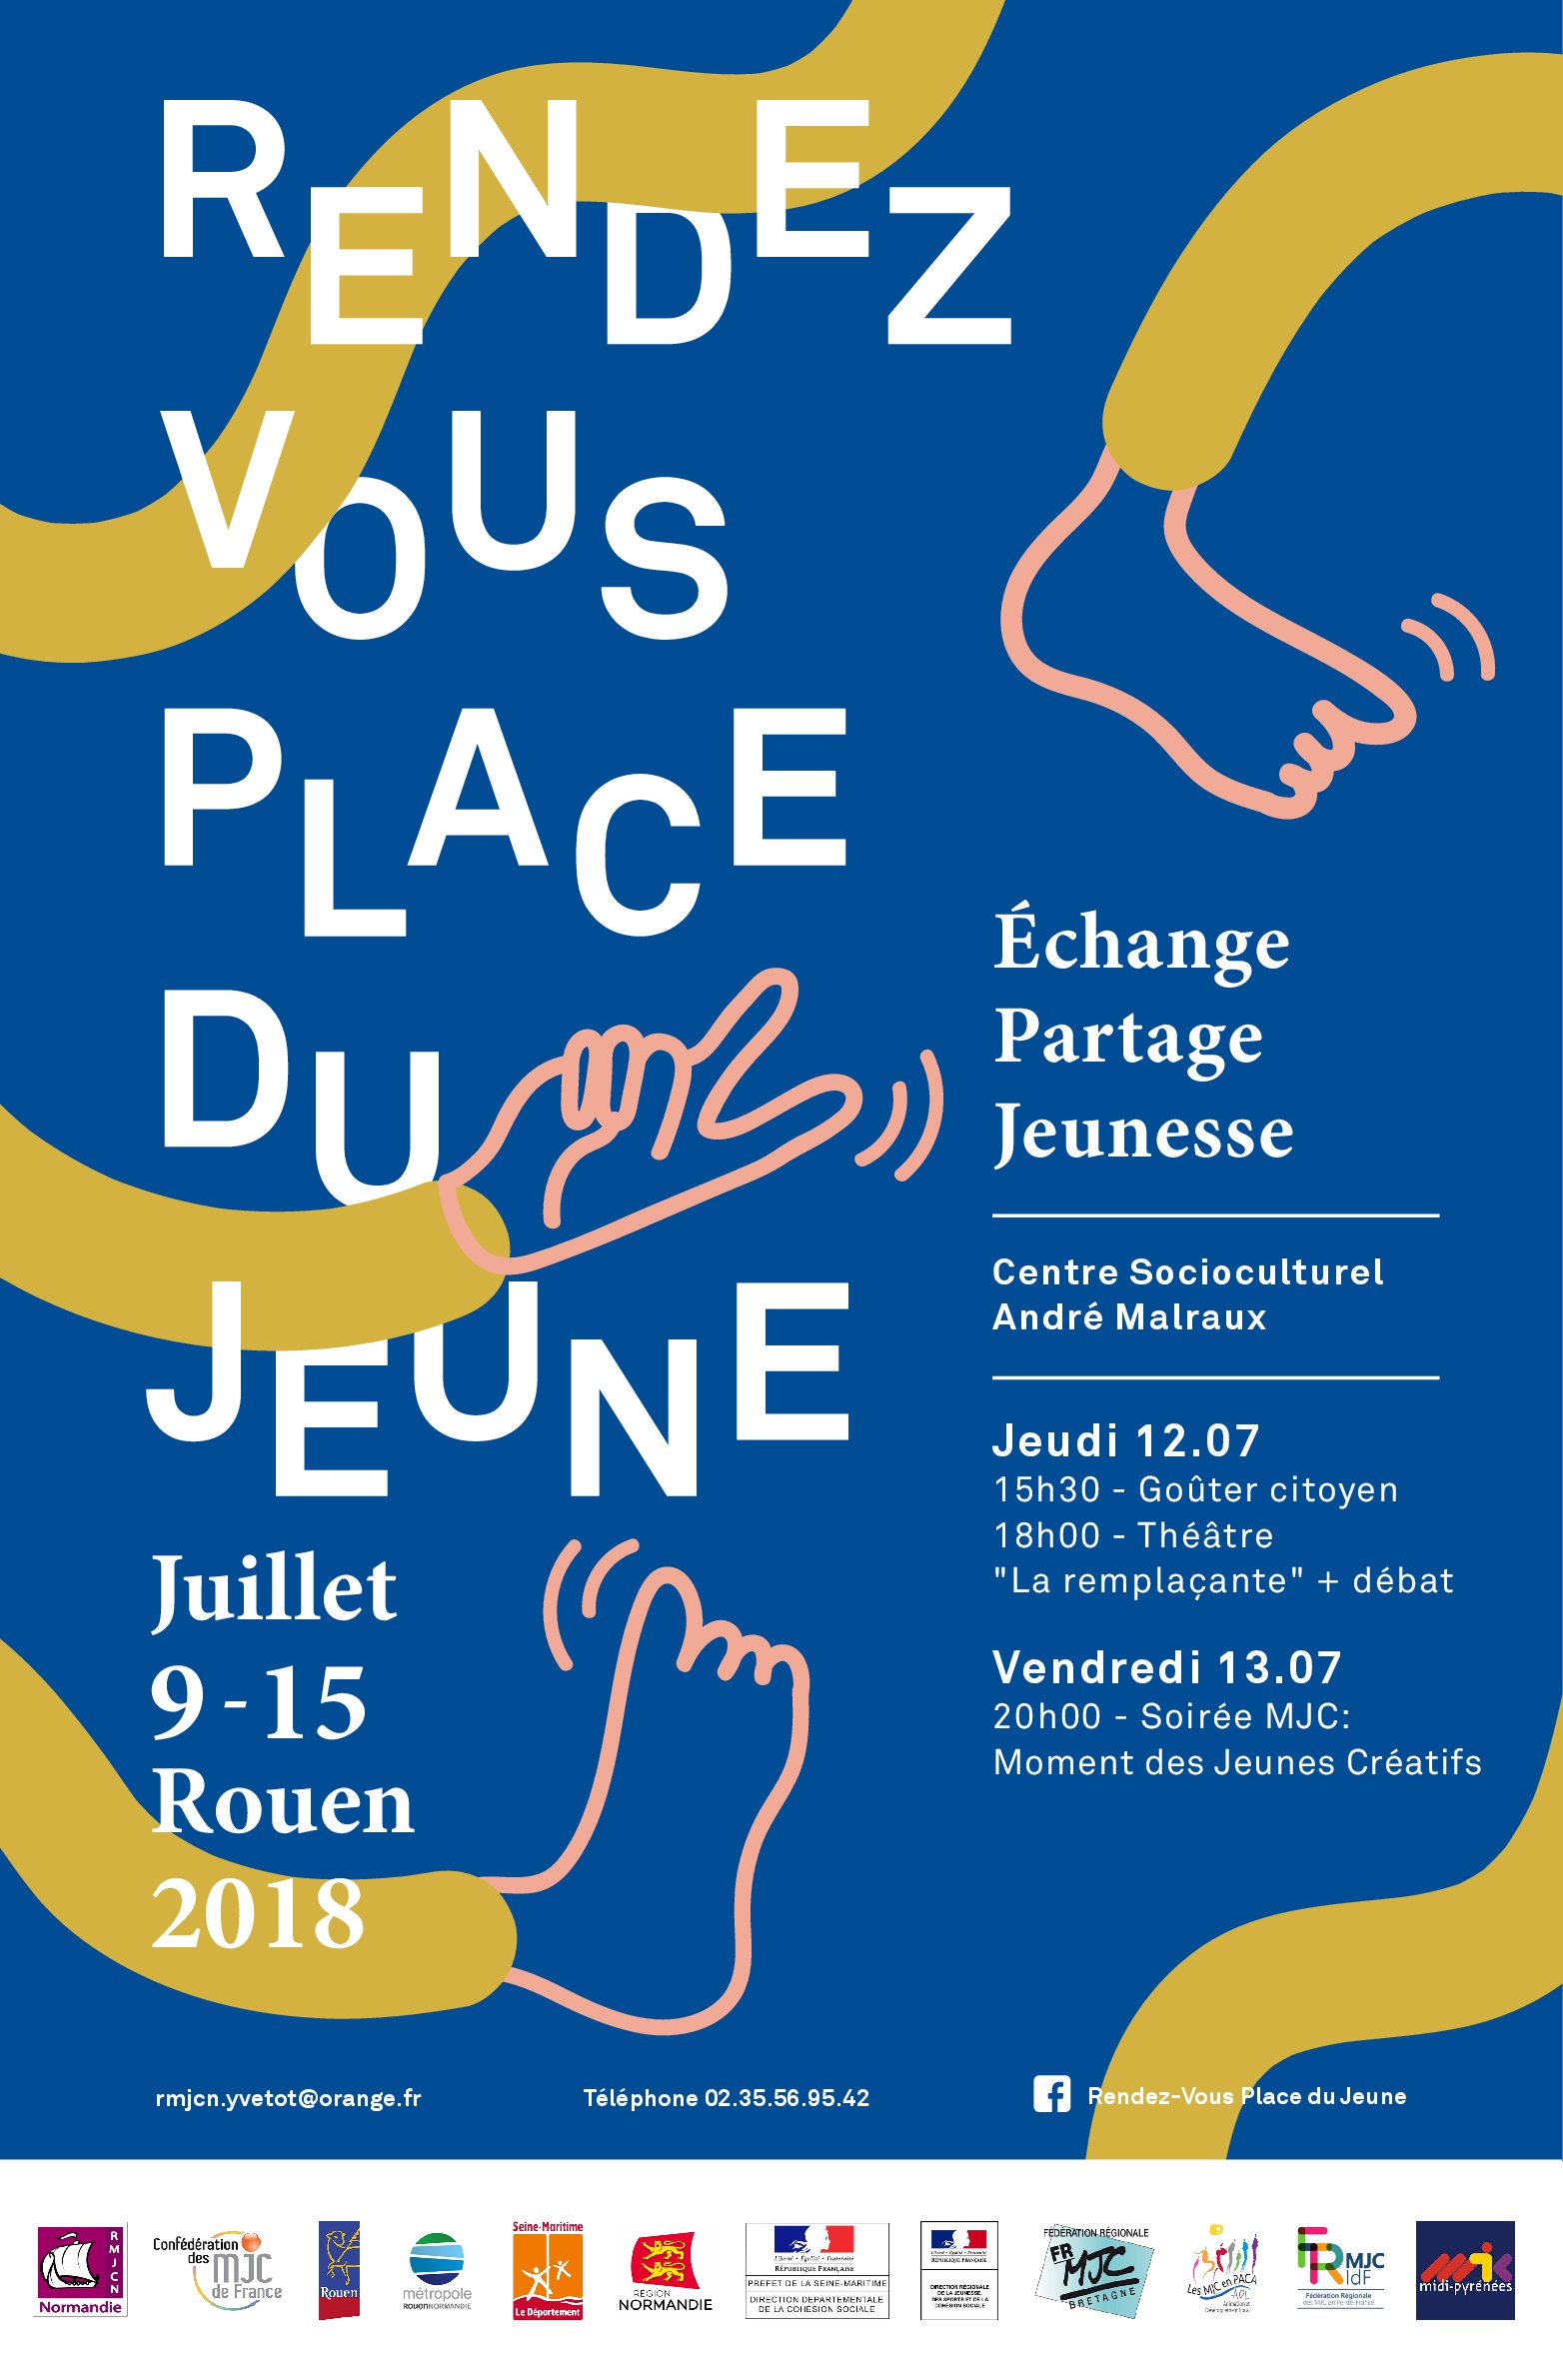 Rendez-vous place du jeune du 9 au 15 juillet 2018 à Rouen maison des jeunes et de la culturel mjc